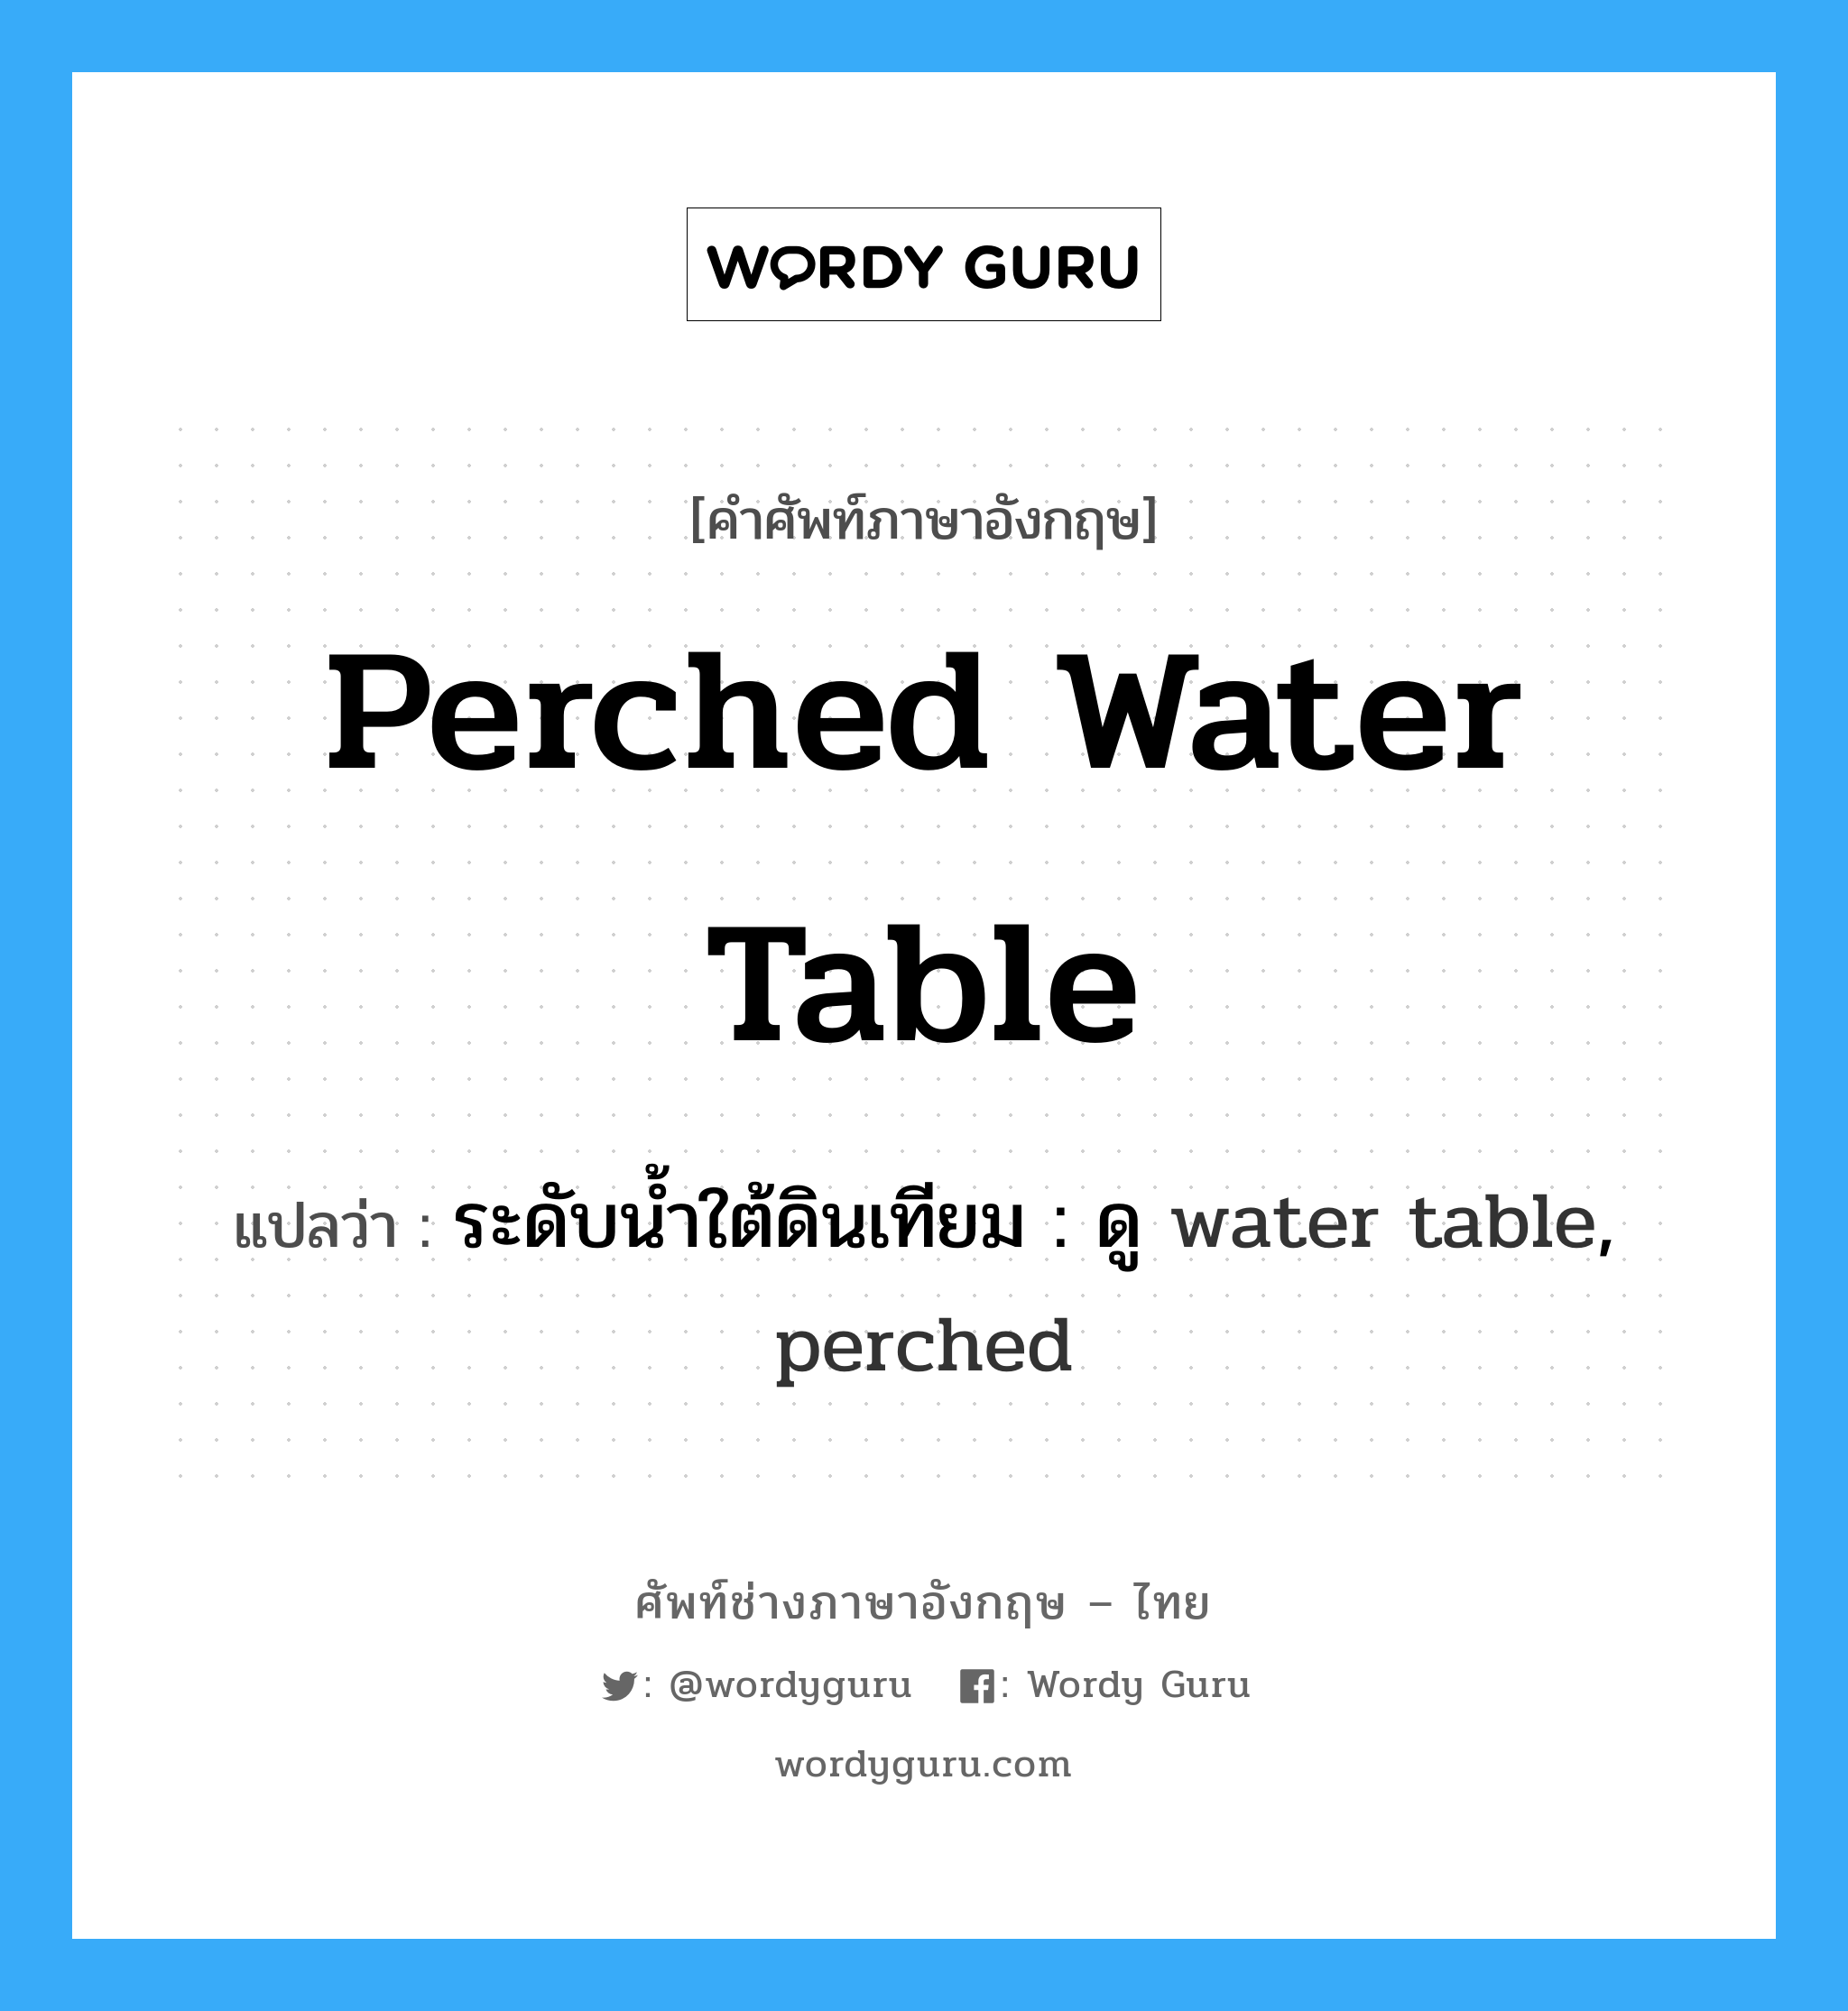 ระดับน้ำใต้ดินเทียม : ดู water table, perched ภาษาอังกฤษ?, คำศัพท์ช่างภาษาอังกฤษ - ไทย ระดับน้ำใต้ดินเทียม : ดู water table, perched คำศัพท์ภาษาอังกฤษ ระดับน้ำใต้ดินเทียม : ดู water table, perched แปลว่า perched water table